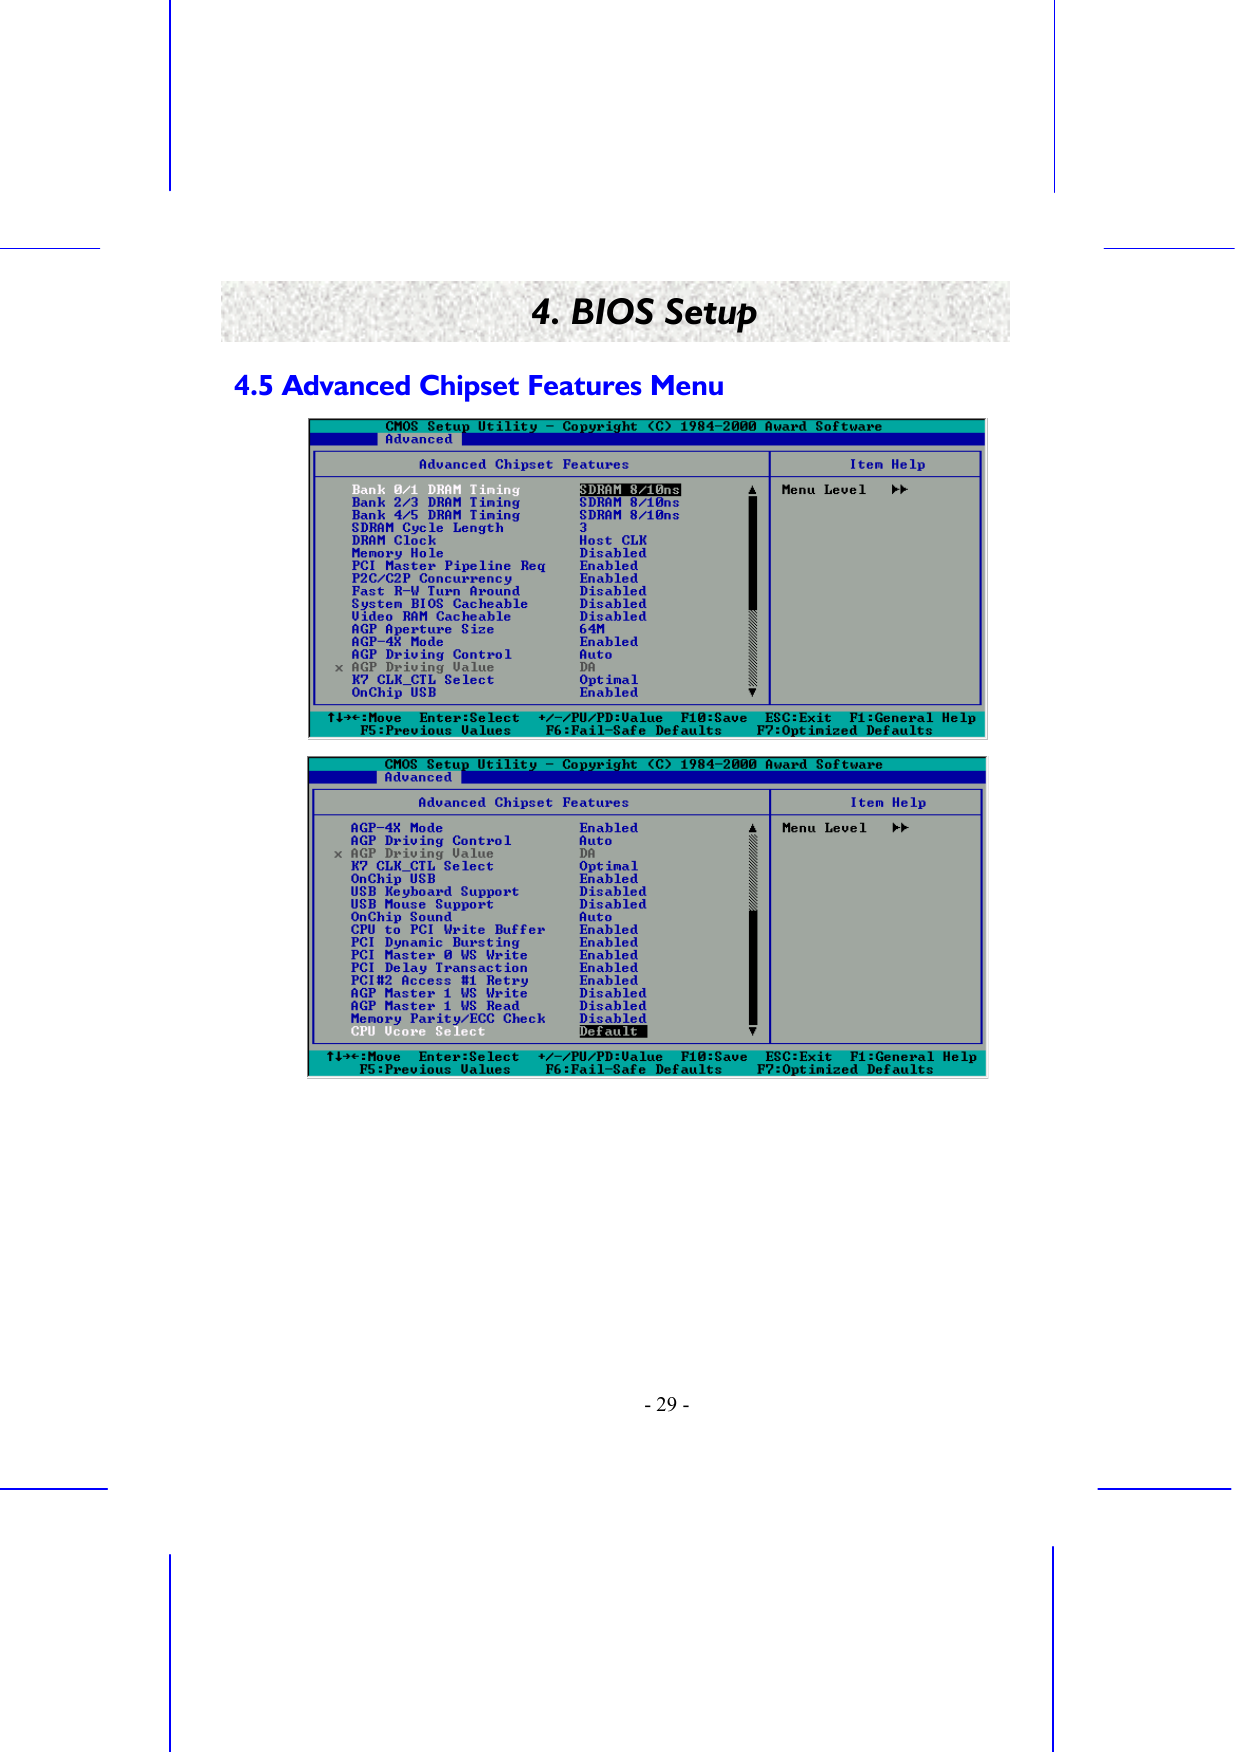    - 29 - 4. BIOS Setup 4.5 Advanced Chipset Features Menu   